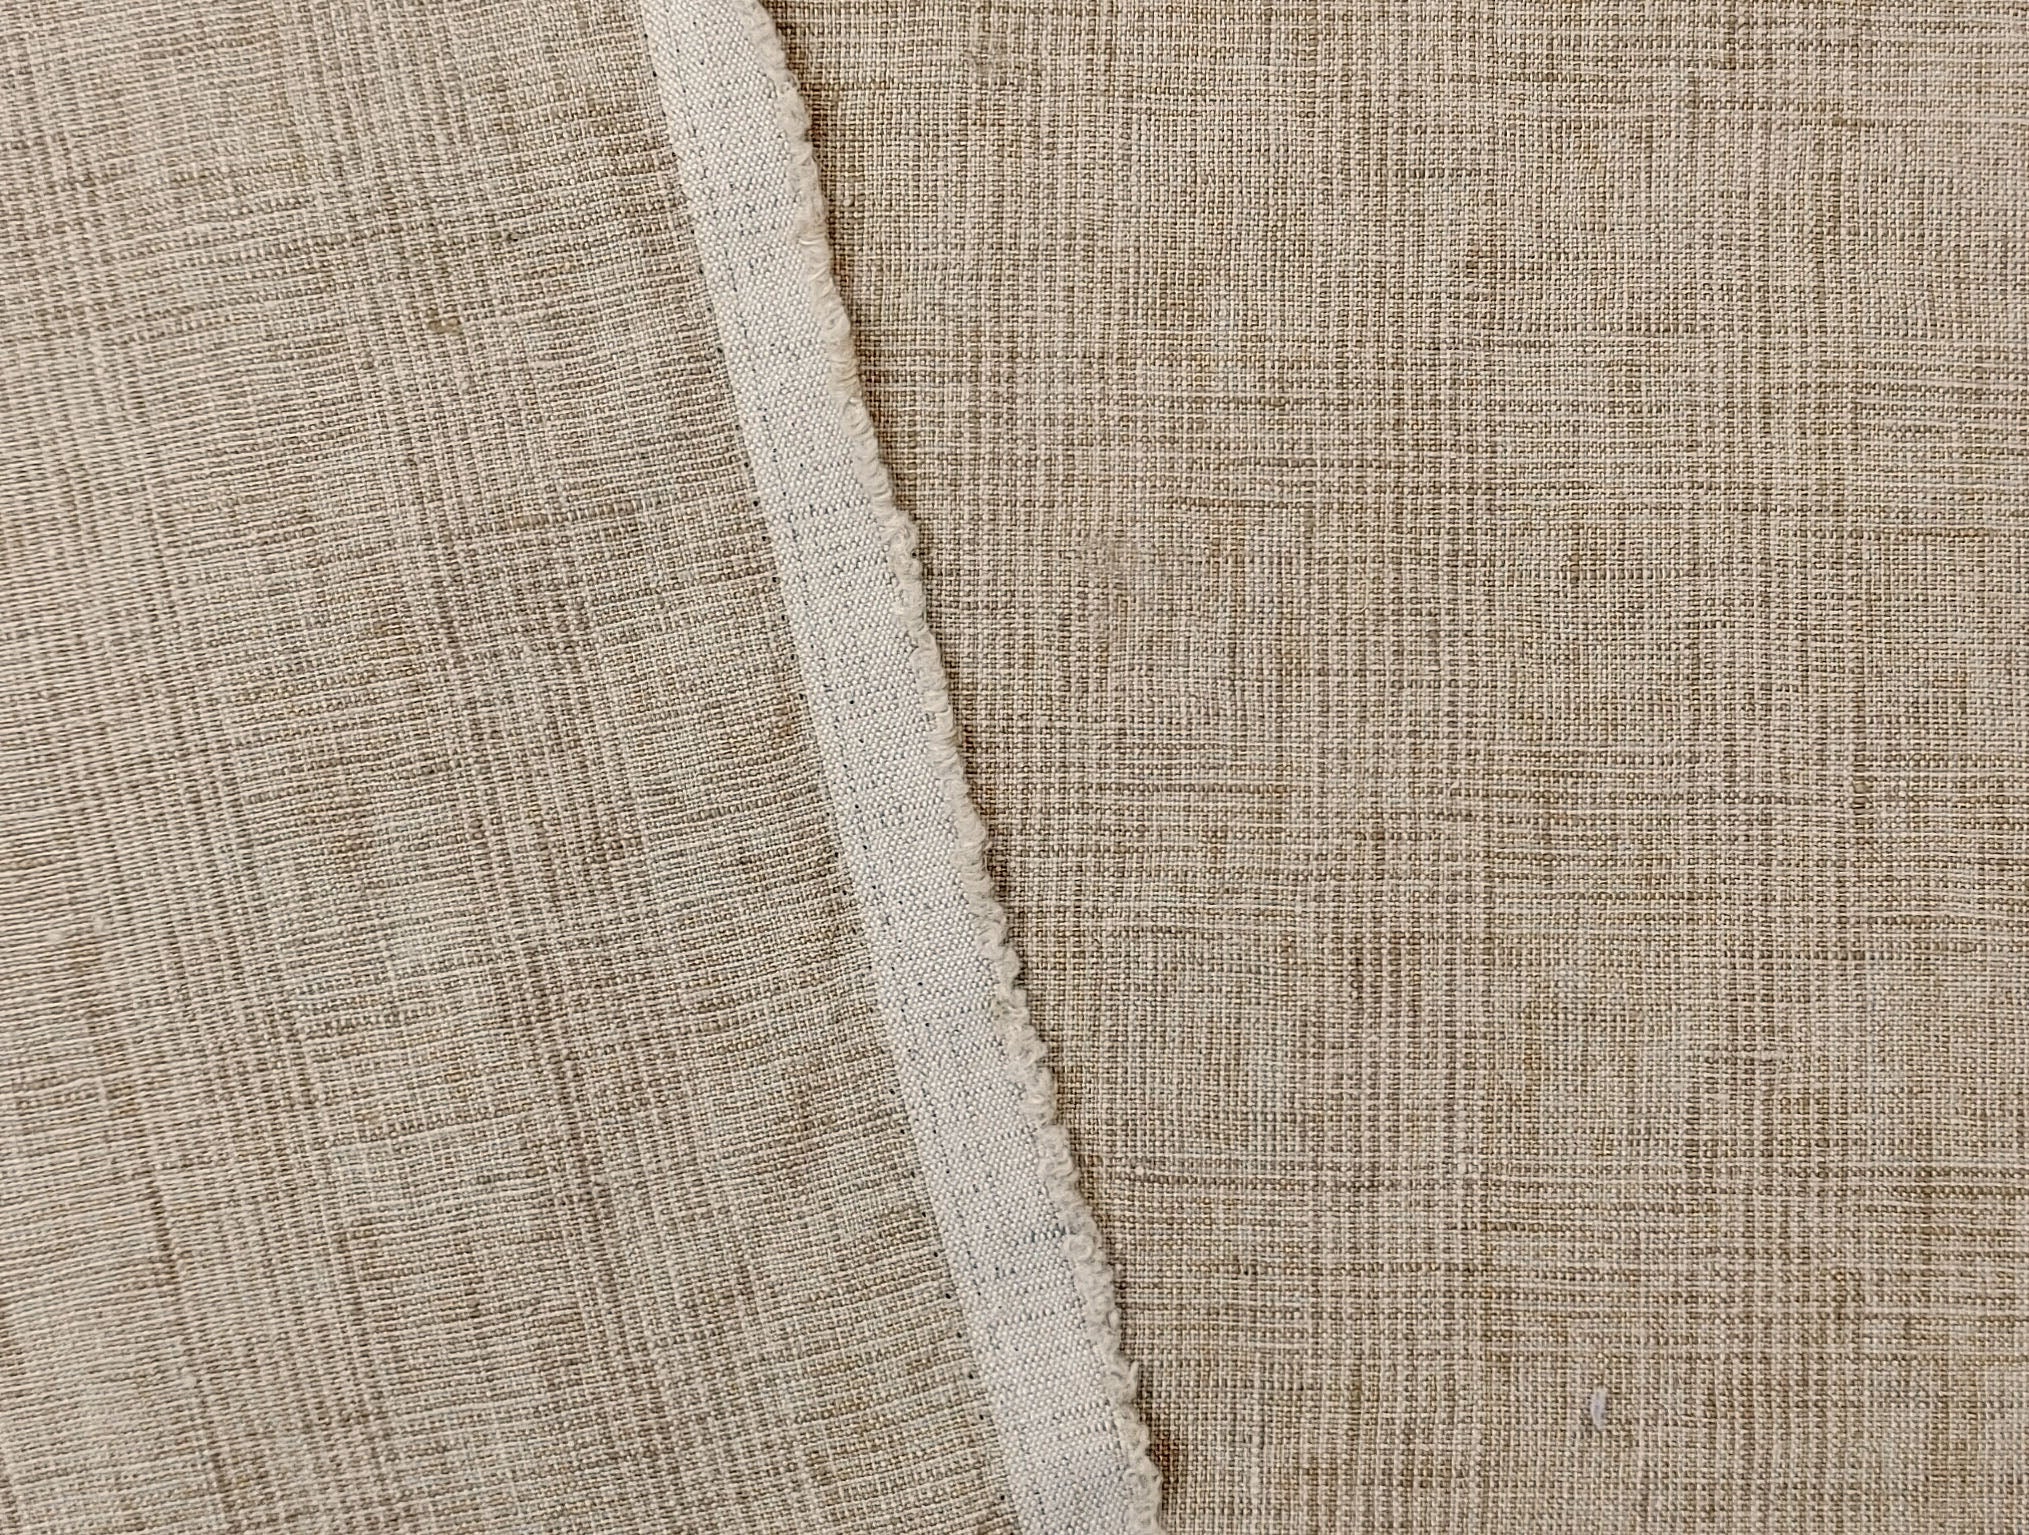 Beige Subtle Glen Plaid Fabric in 100% Linen, Medium-Heavy Weight 7375 - The Linen Lab - Beige